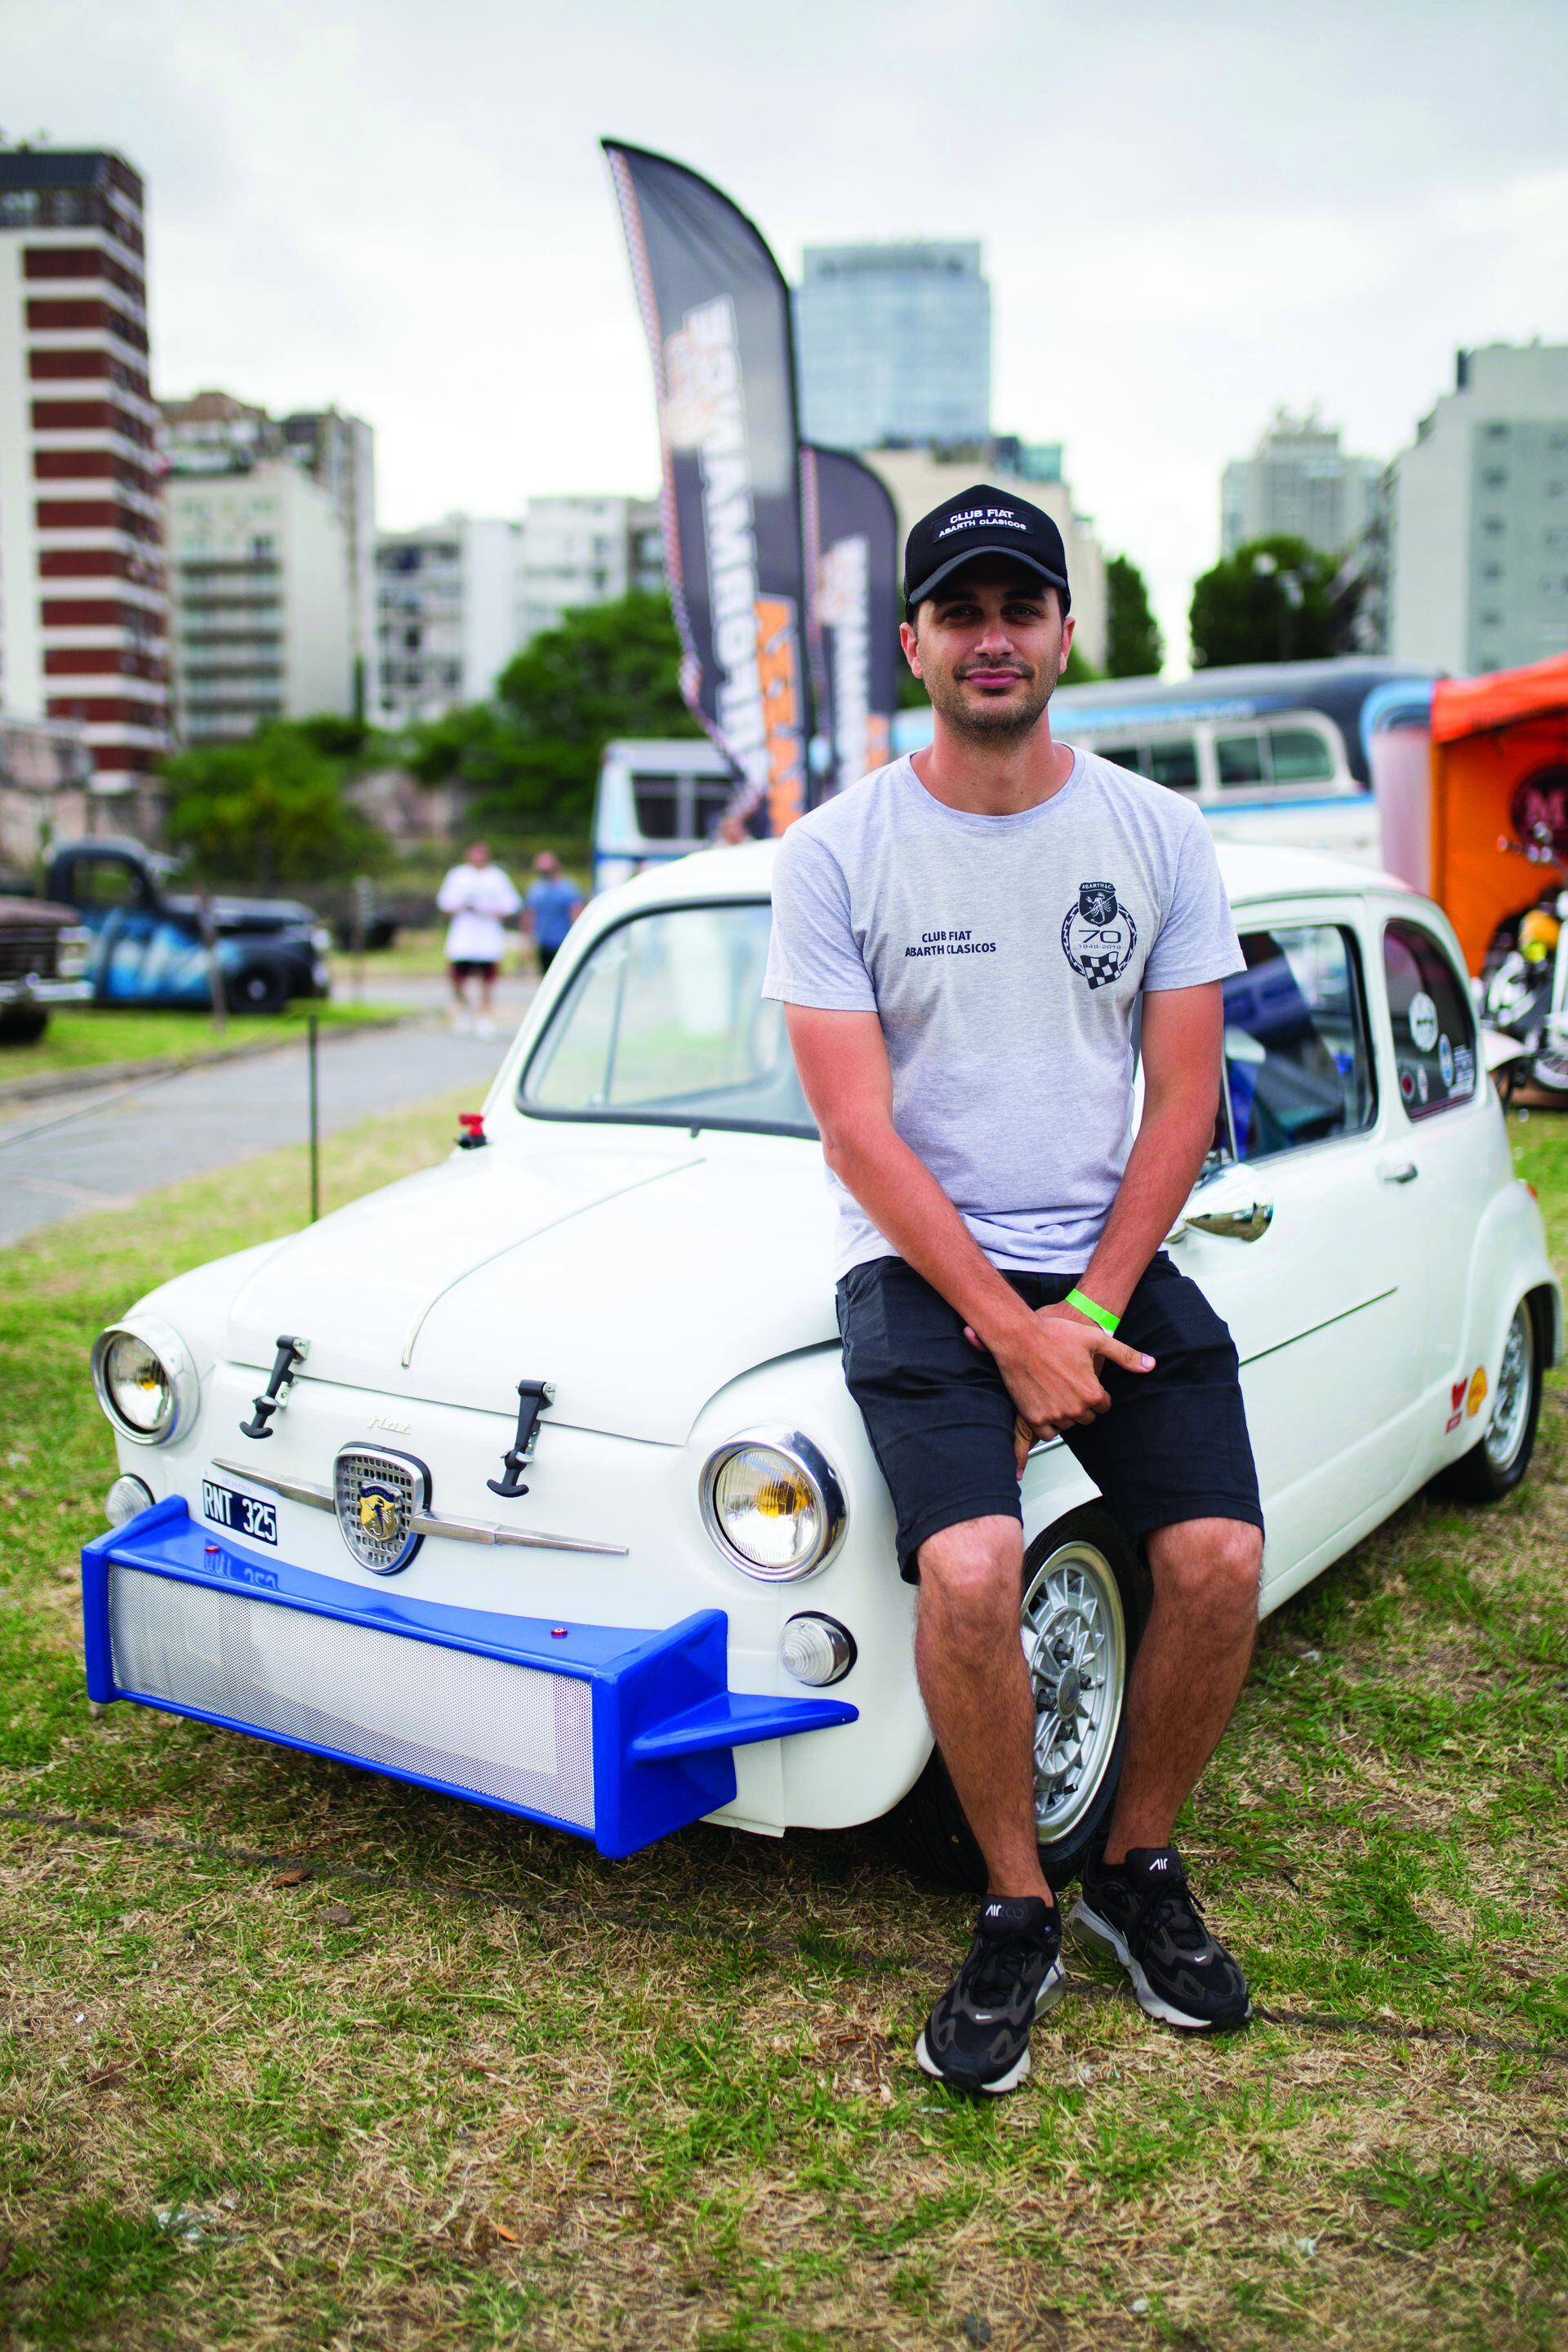 Lucas (36) Es de Villa Urquiza. ¿Qué auto tenés? “Fiat 600 modelo 72. Es la réplica de un modelo de carrera del año 65. Es un auto con mucha nostalgia, a la gente le encanta”.